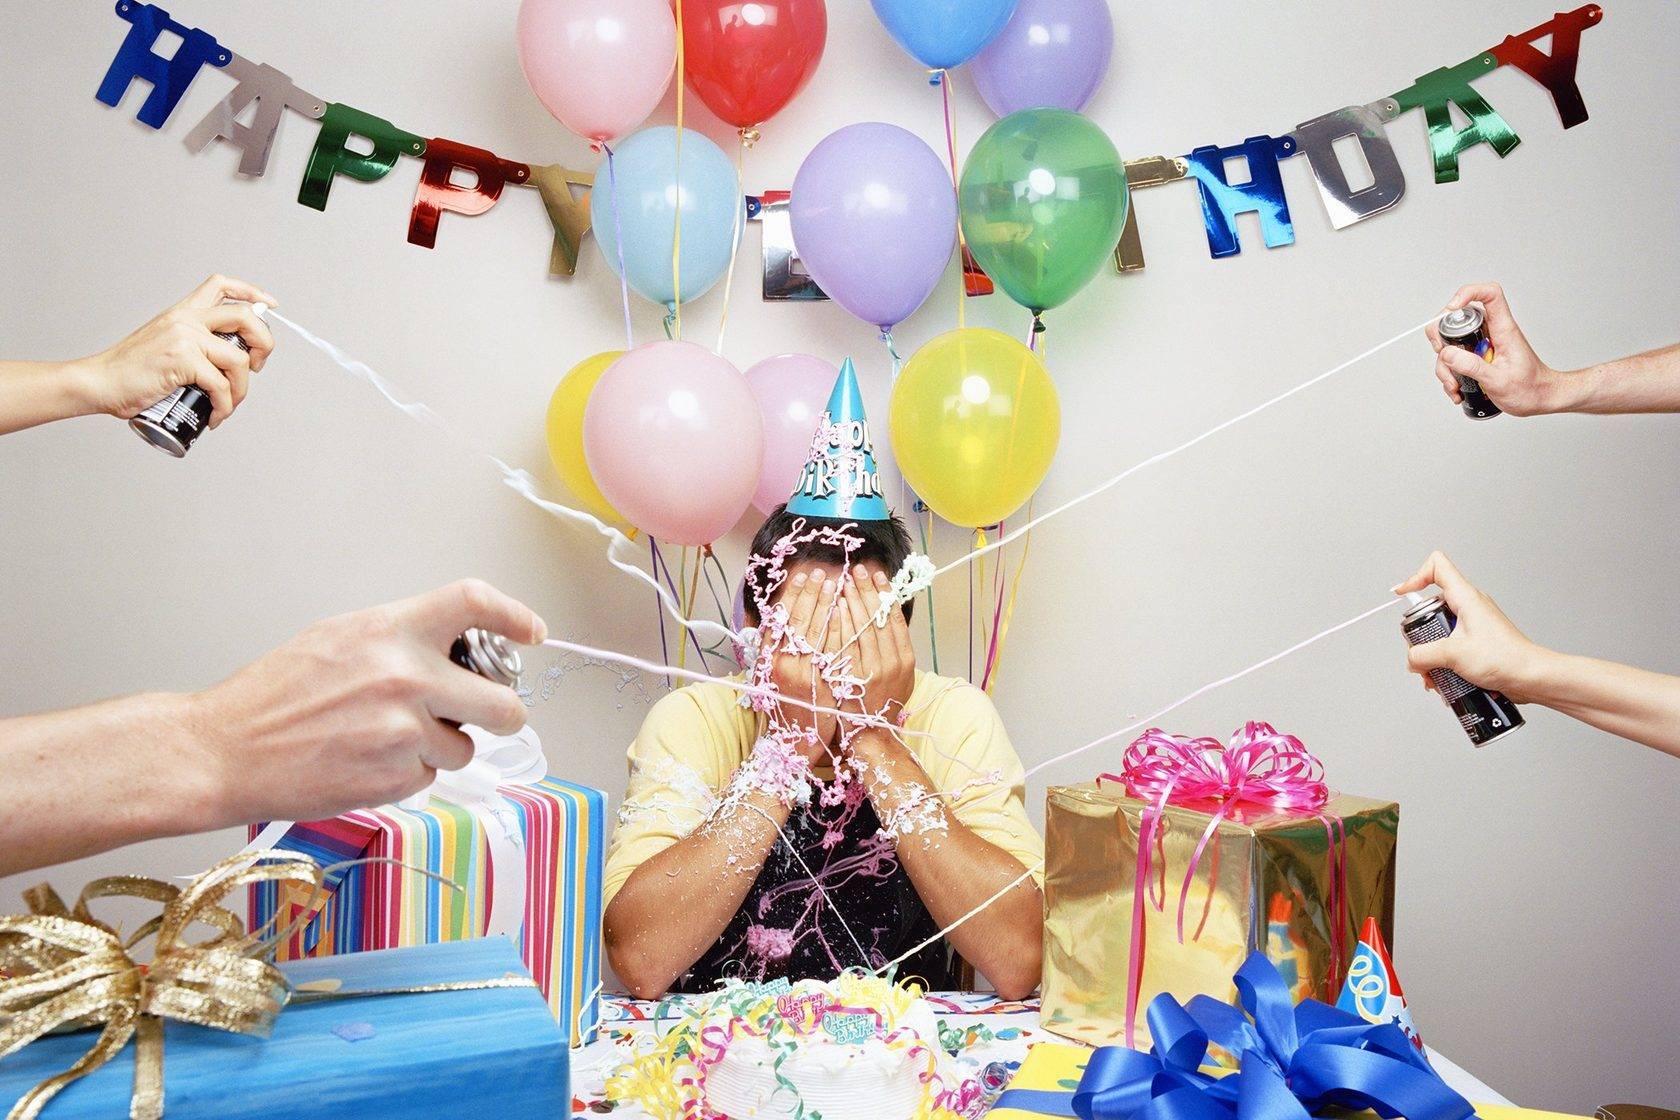 Подарок сюрприз поздравление с днём рождения, 50 идей, любимому, подруге, маме, мужу, жене, ребенку. какие сюрпризы можно преподнести на день рождения. статья о сюрпризах на день рождения для близких